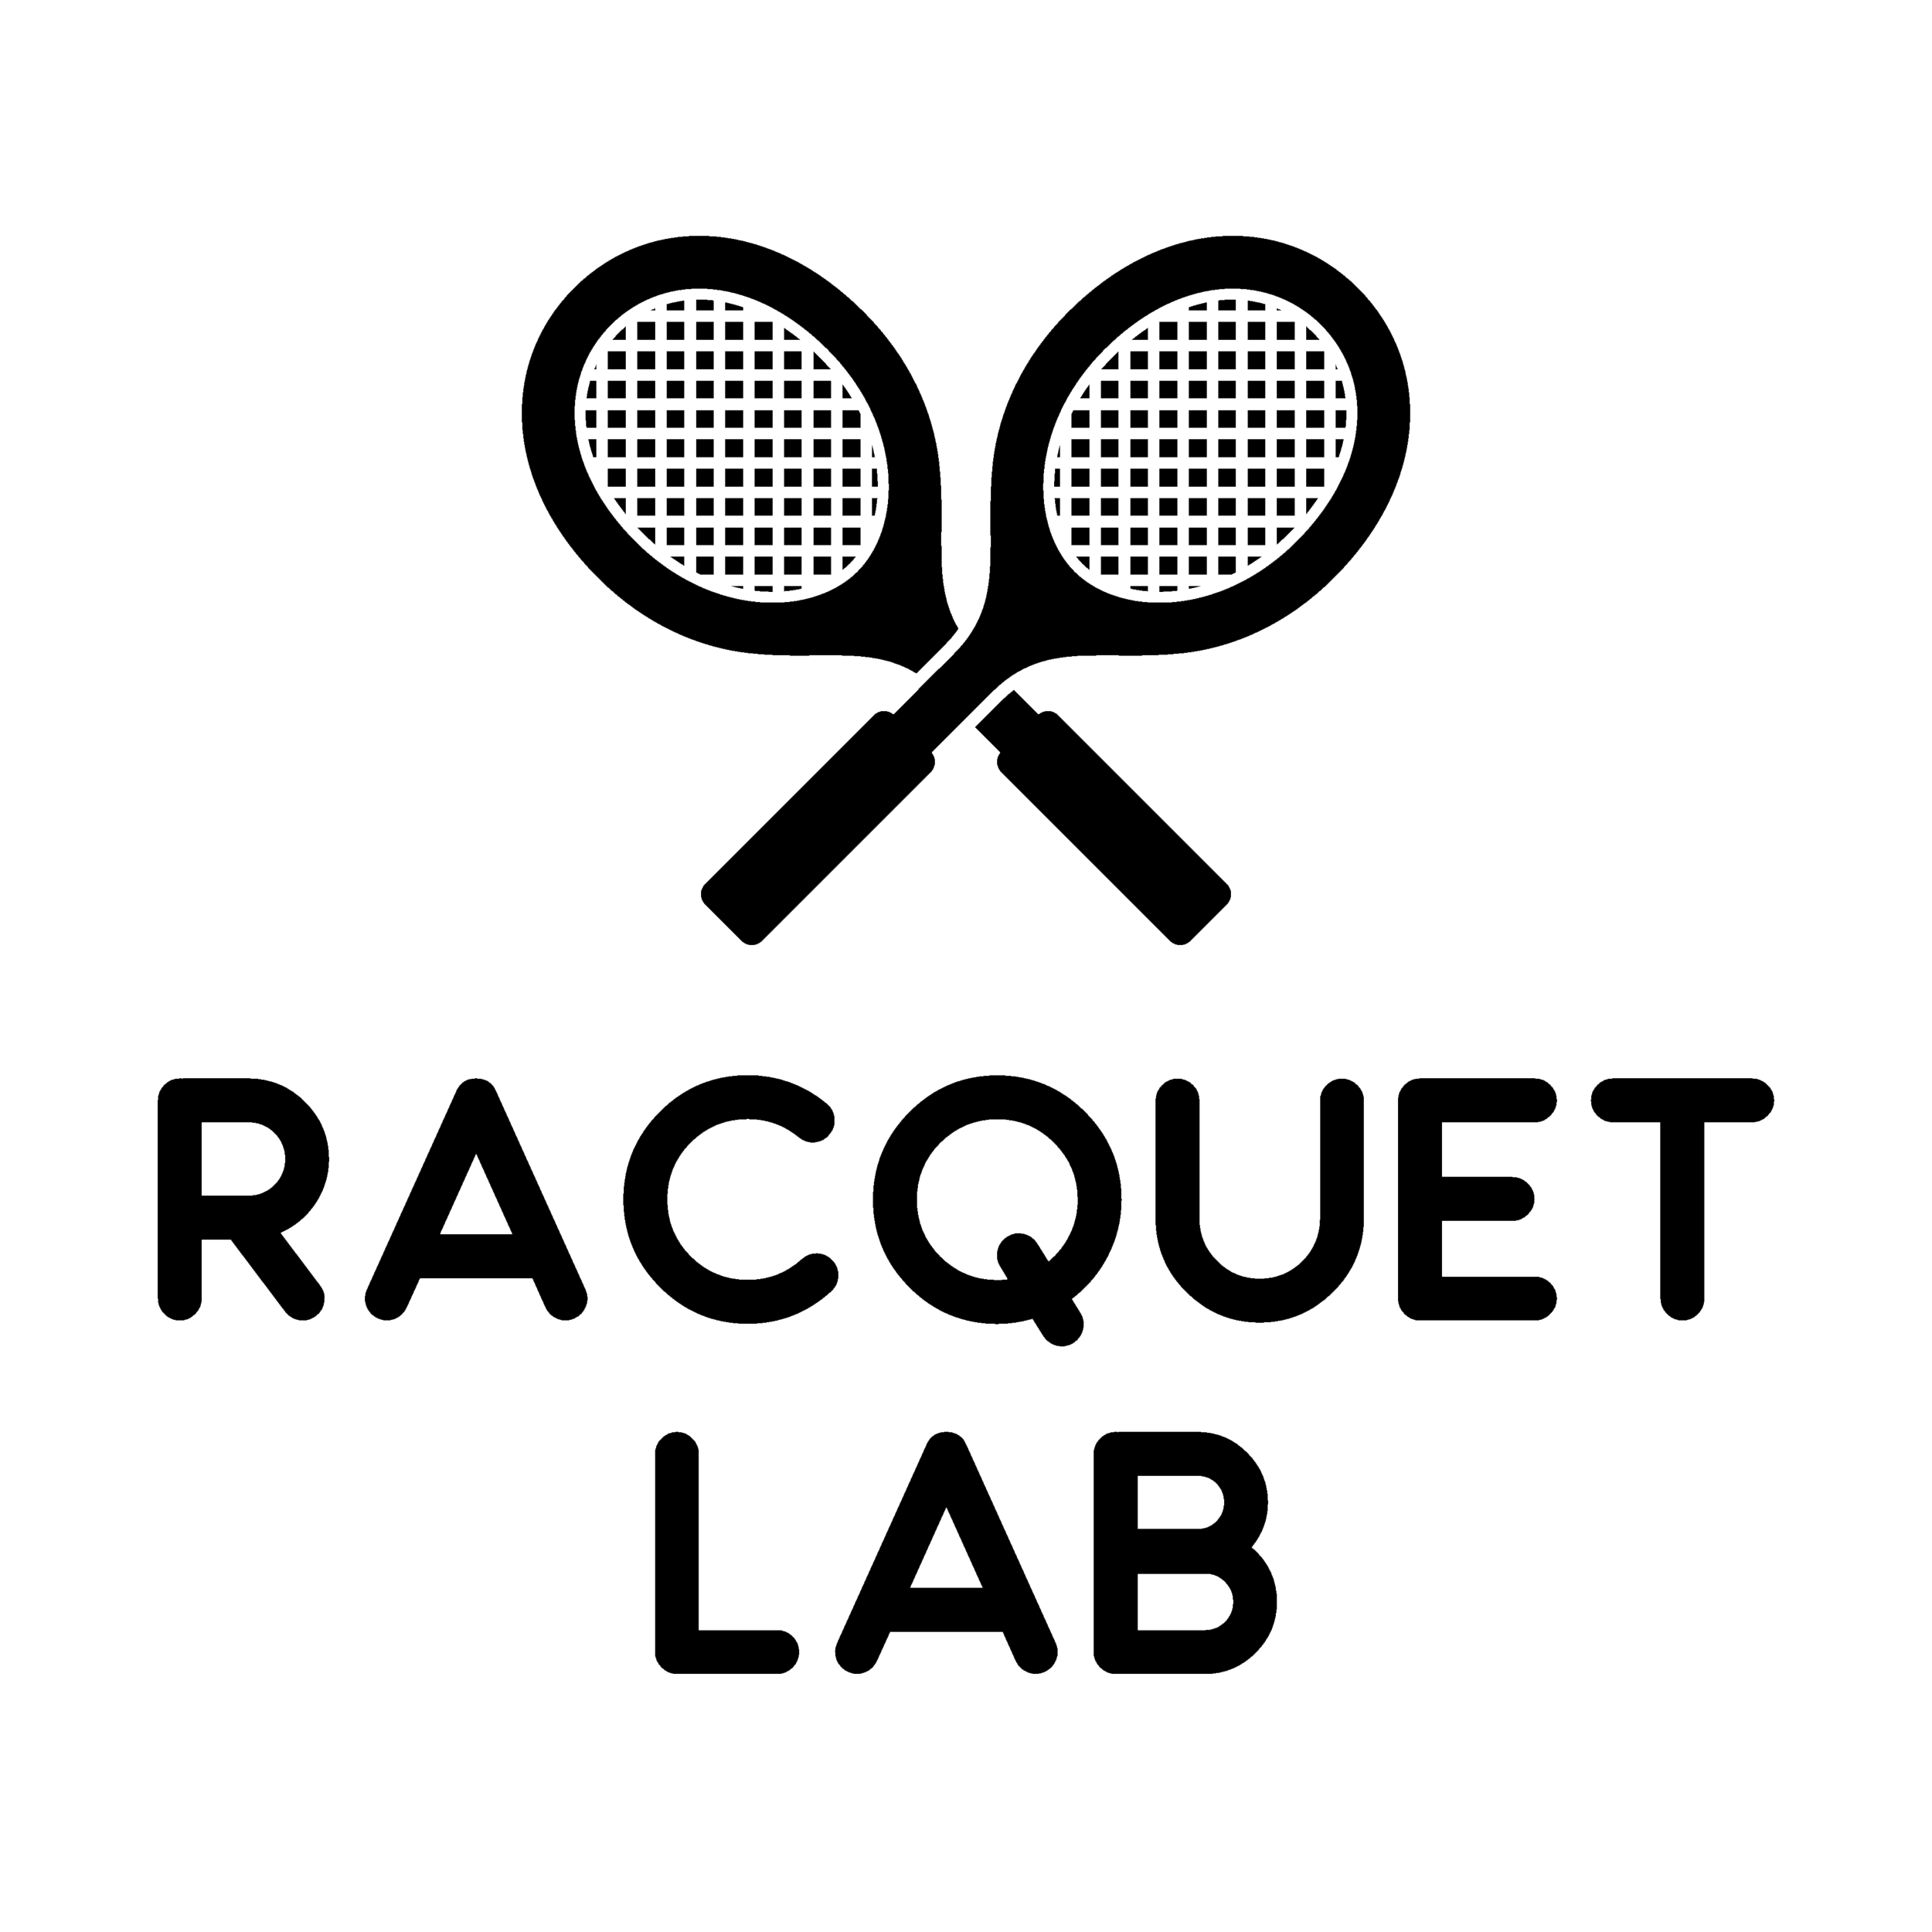 Racquet Lab